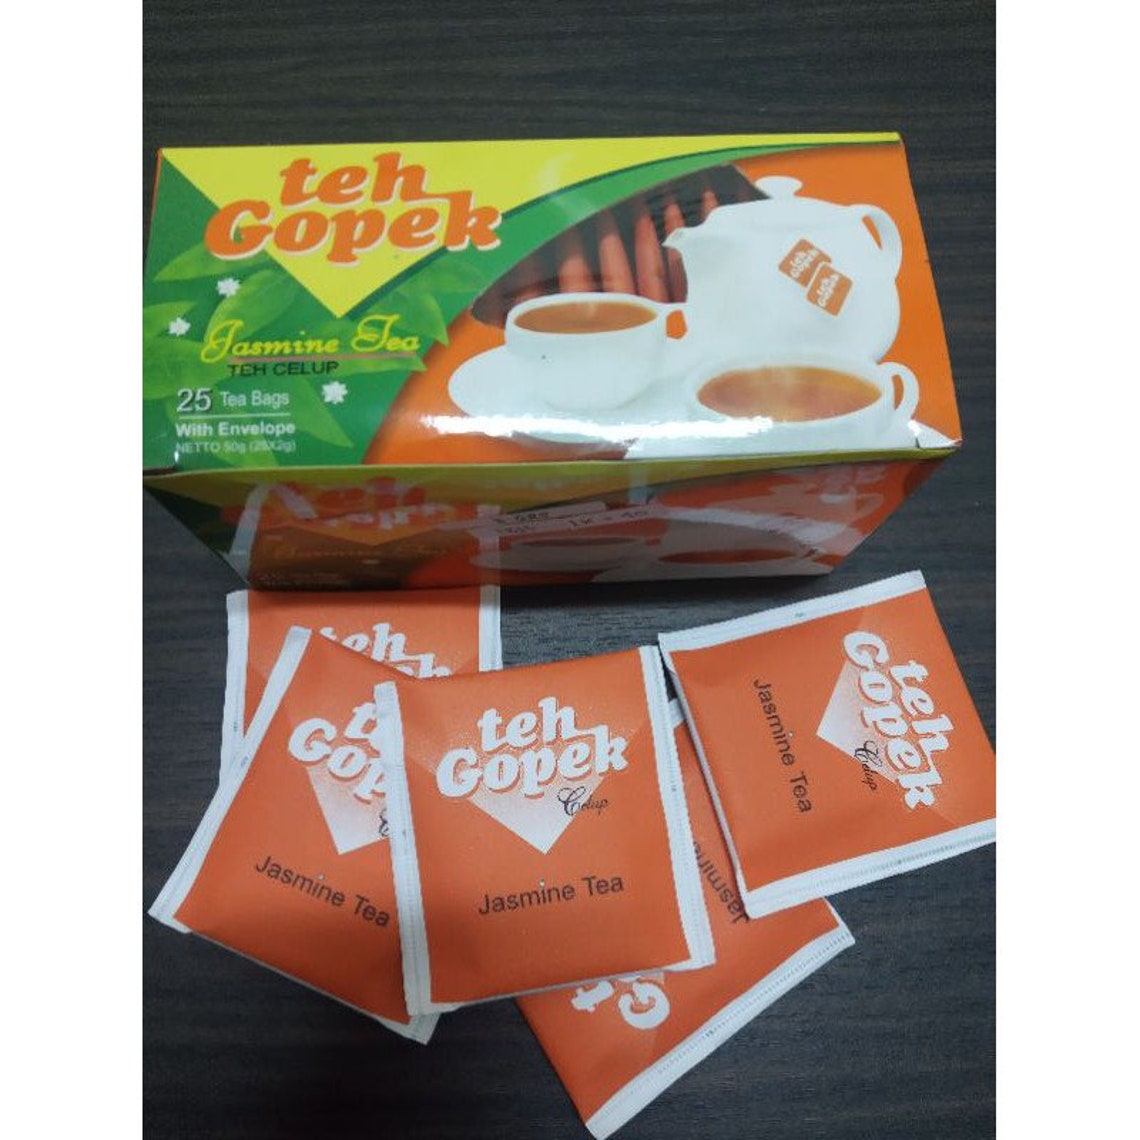 Teh Gopek Jasmine Tea Bags 25-ct With Envelope 1.76 Oz - Etsy UK